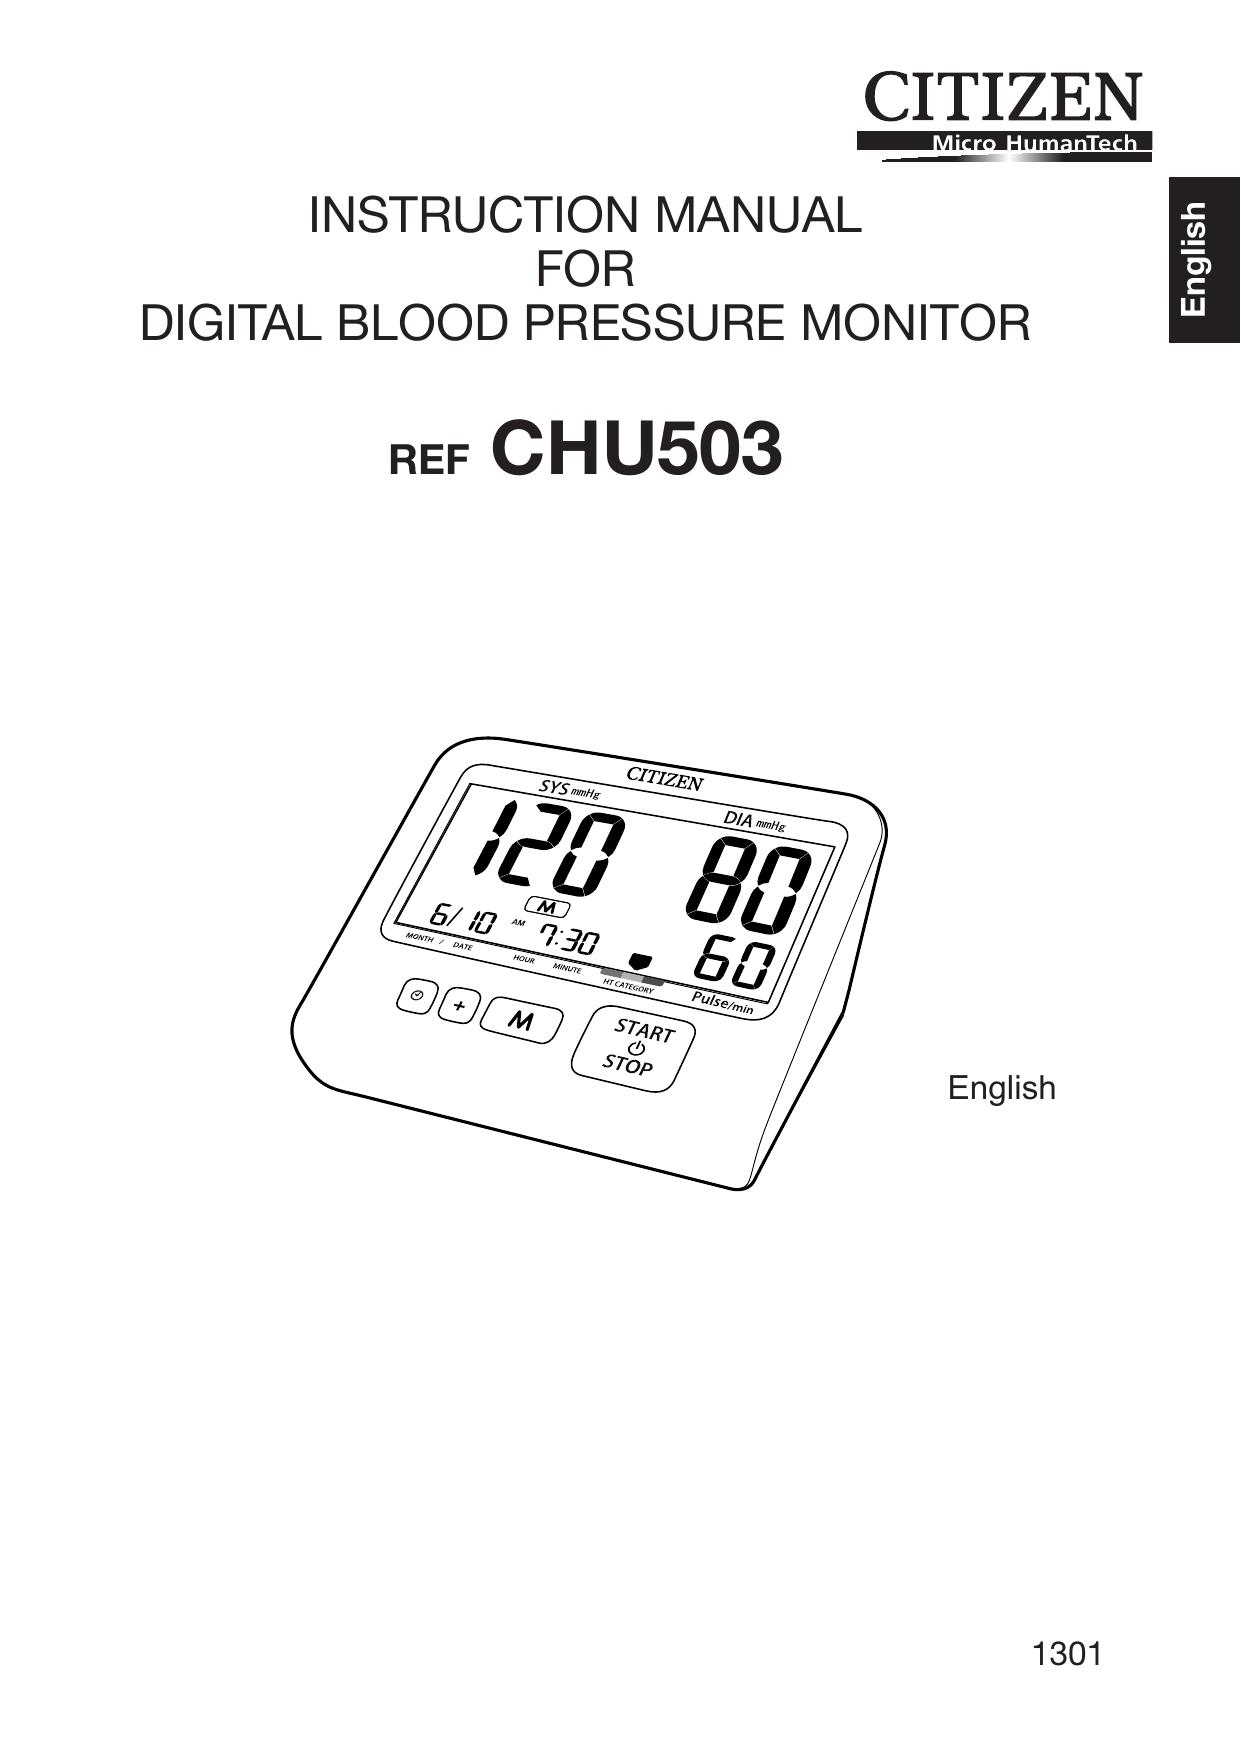 Citizen CHU503 Blood Pressure Monitor User Manual